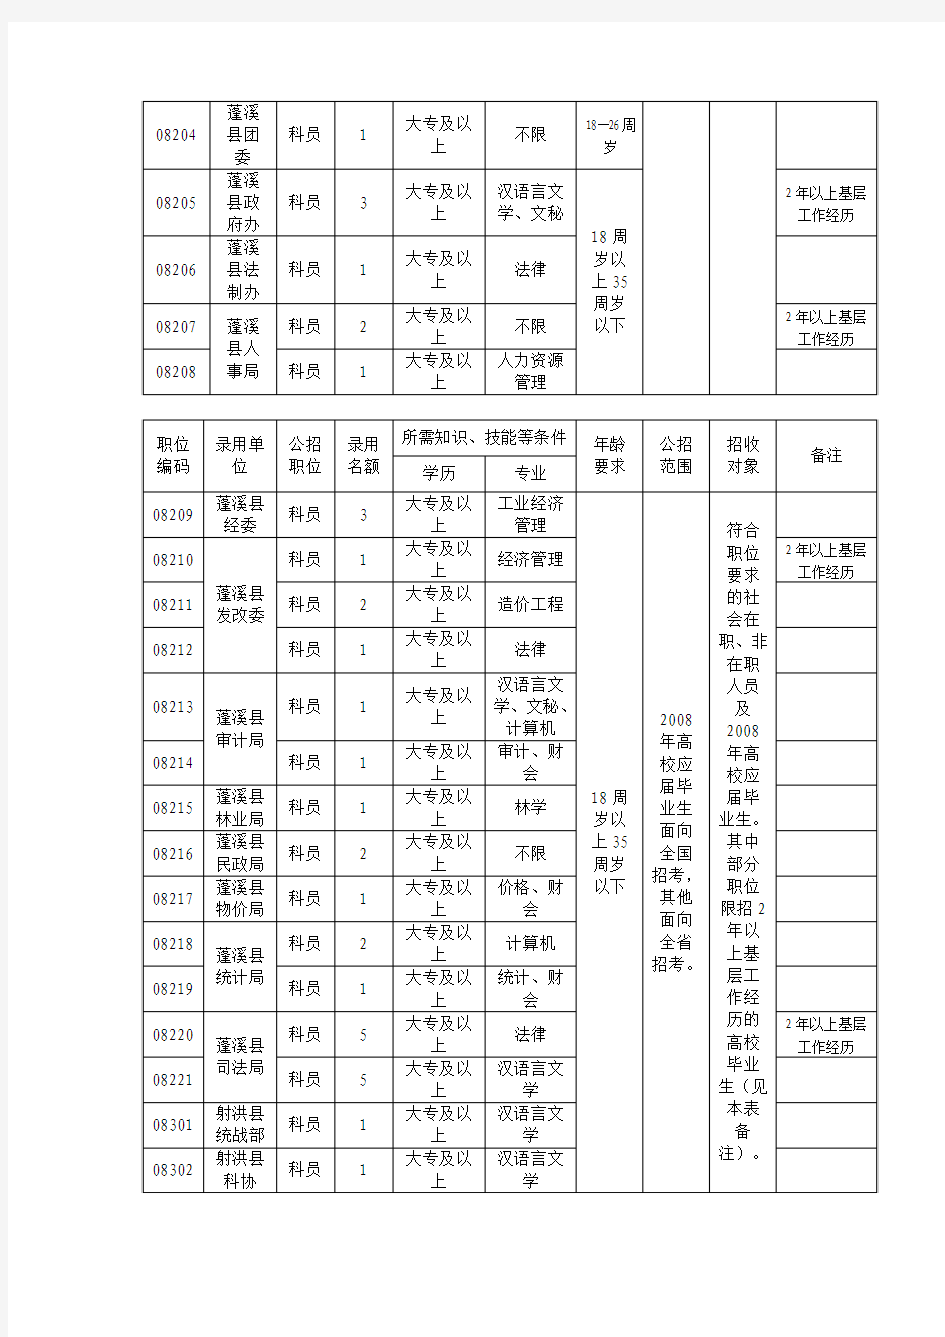 2007年遂宁市公开考试录用公务员职位情况表